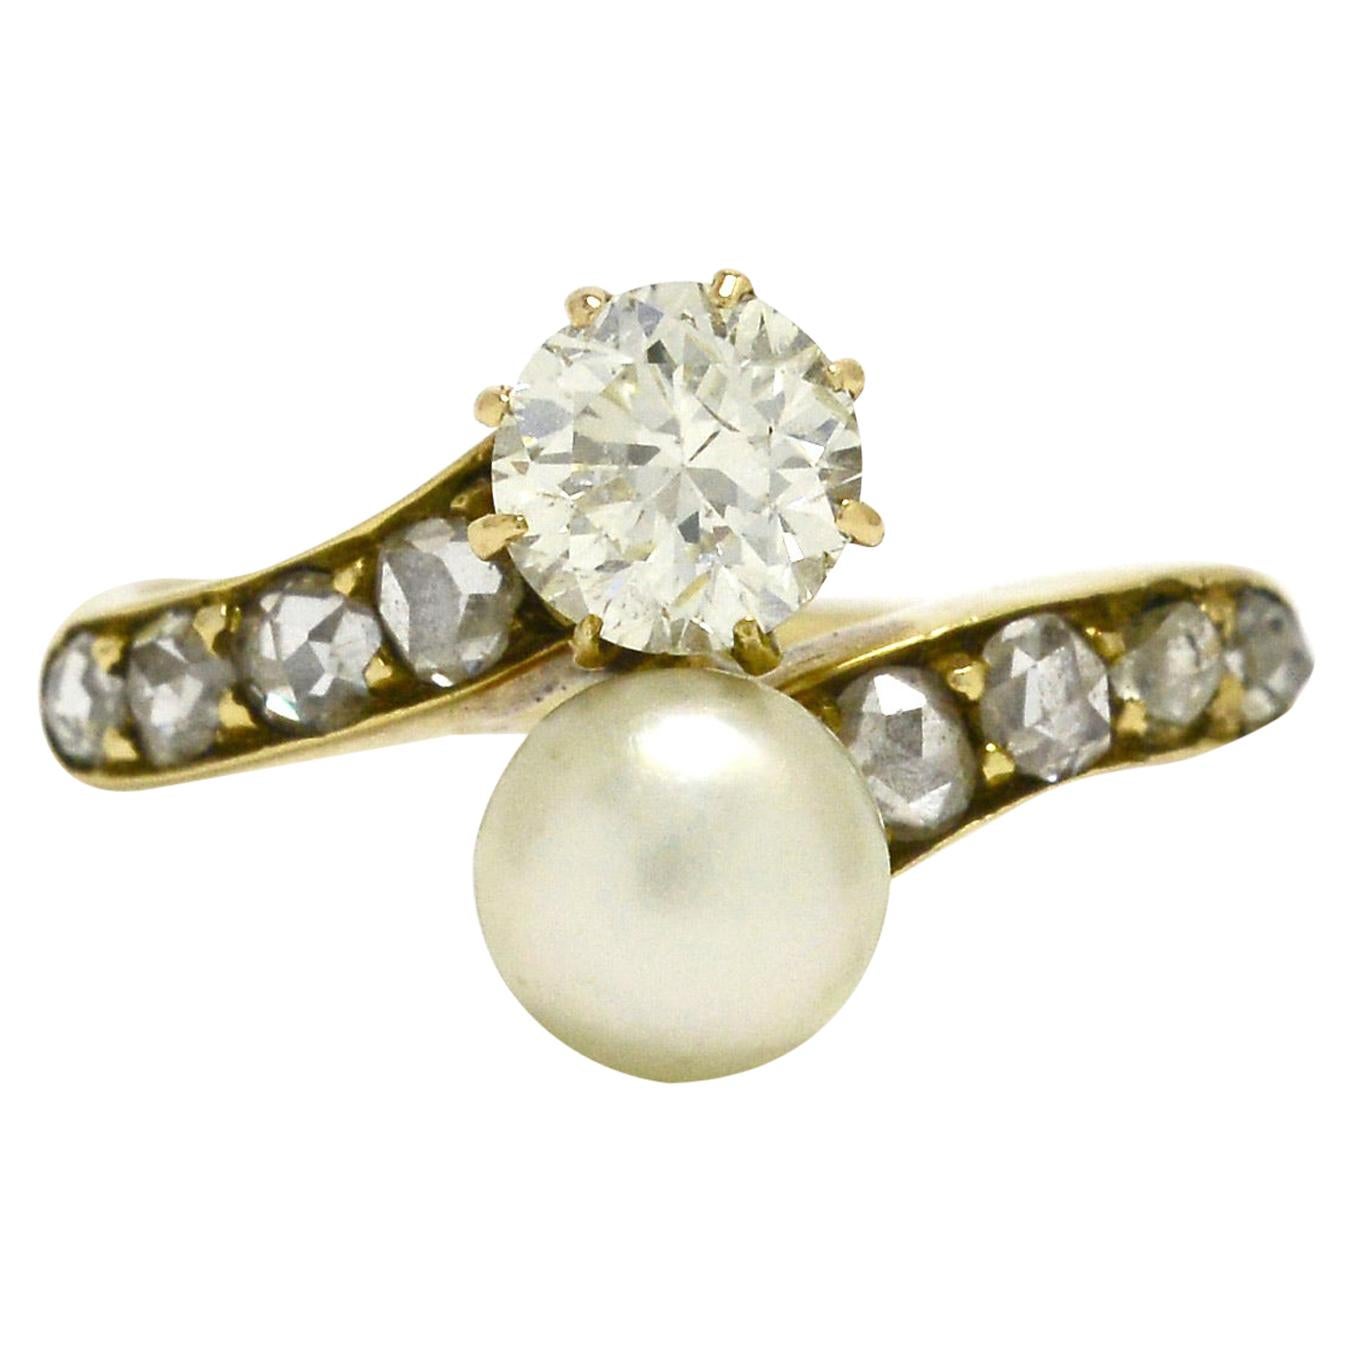 Art Nouveau Pearl and Diamond Engagement Ring 2-Stone Moi et Toi Antique Bridal